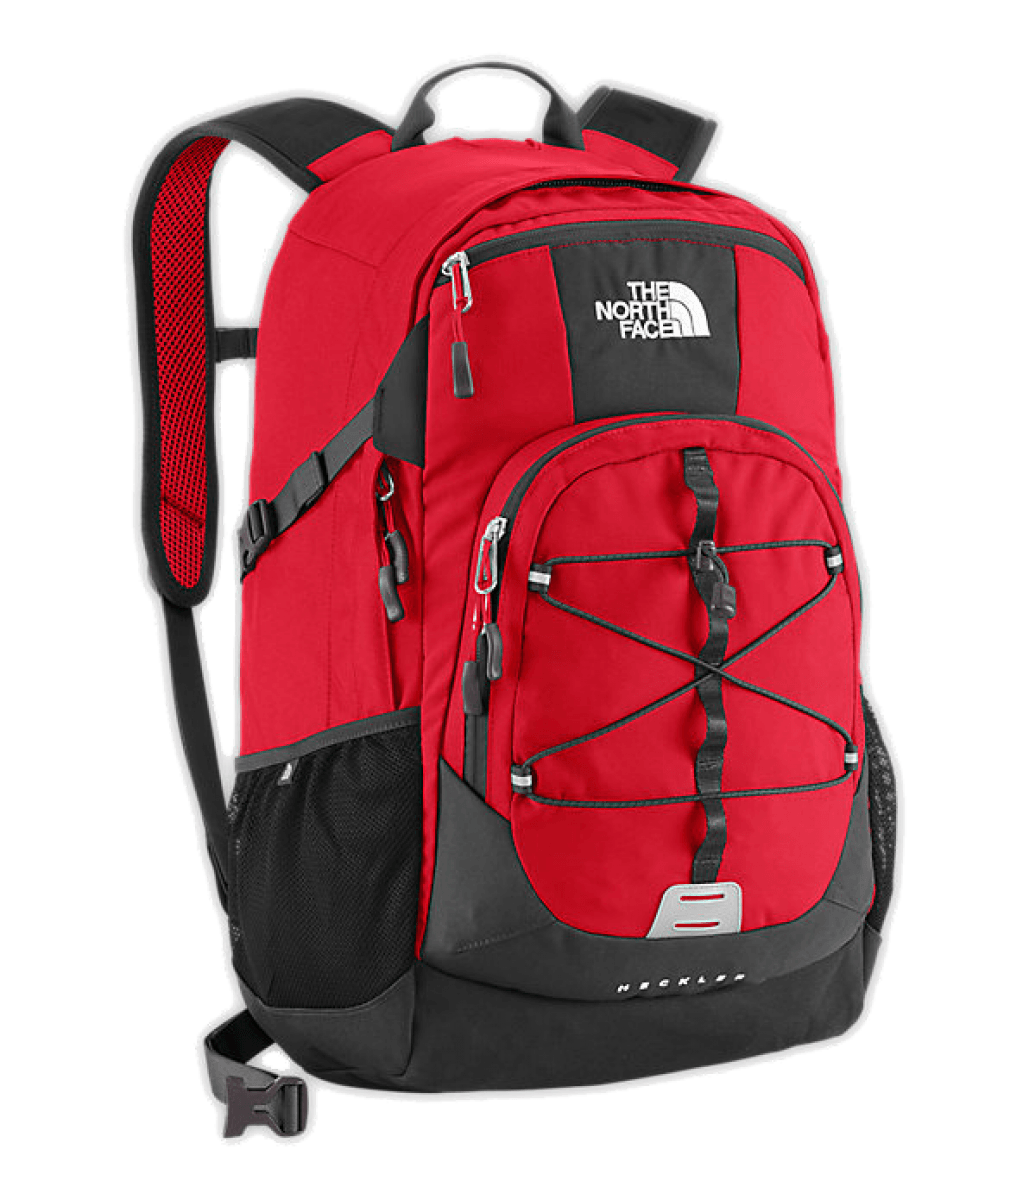 Sport Backpack Png Image PNG Image